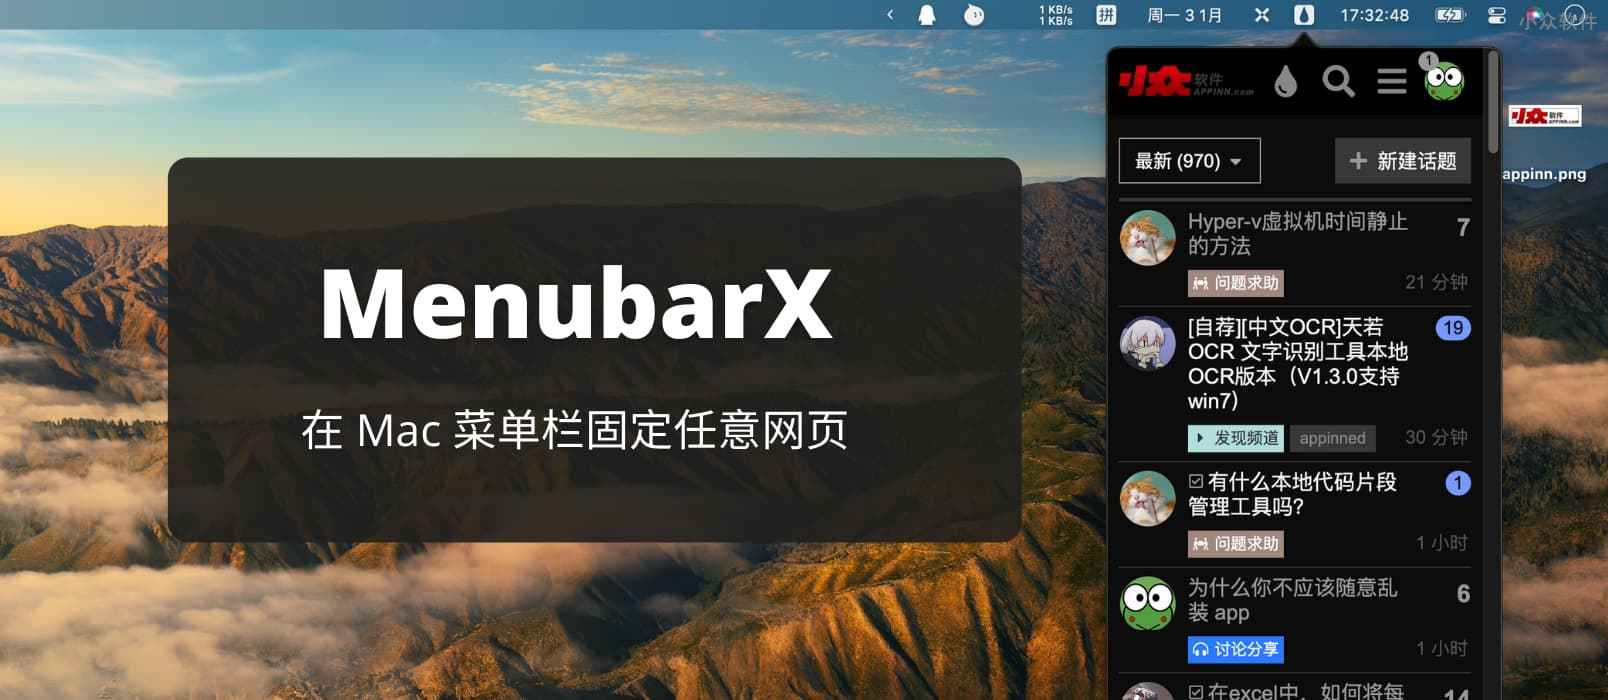 MenubarX - 在 Mac 菜单栏打开网页，就像原生 App 那样[macOS 限免]